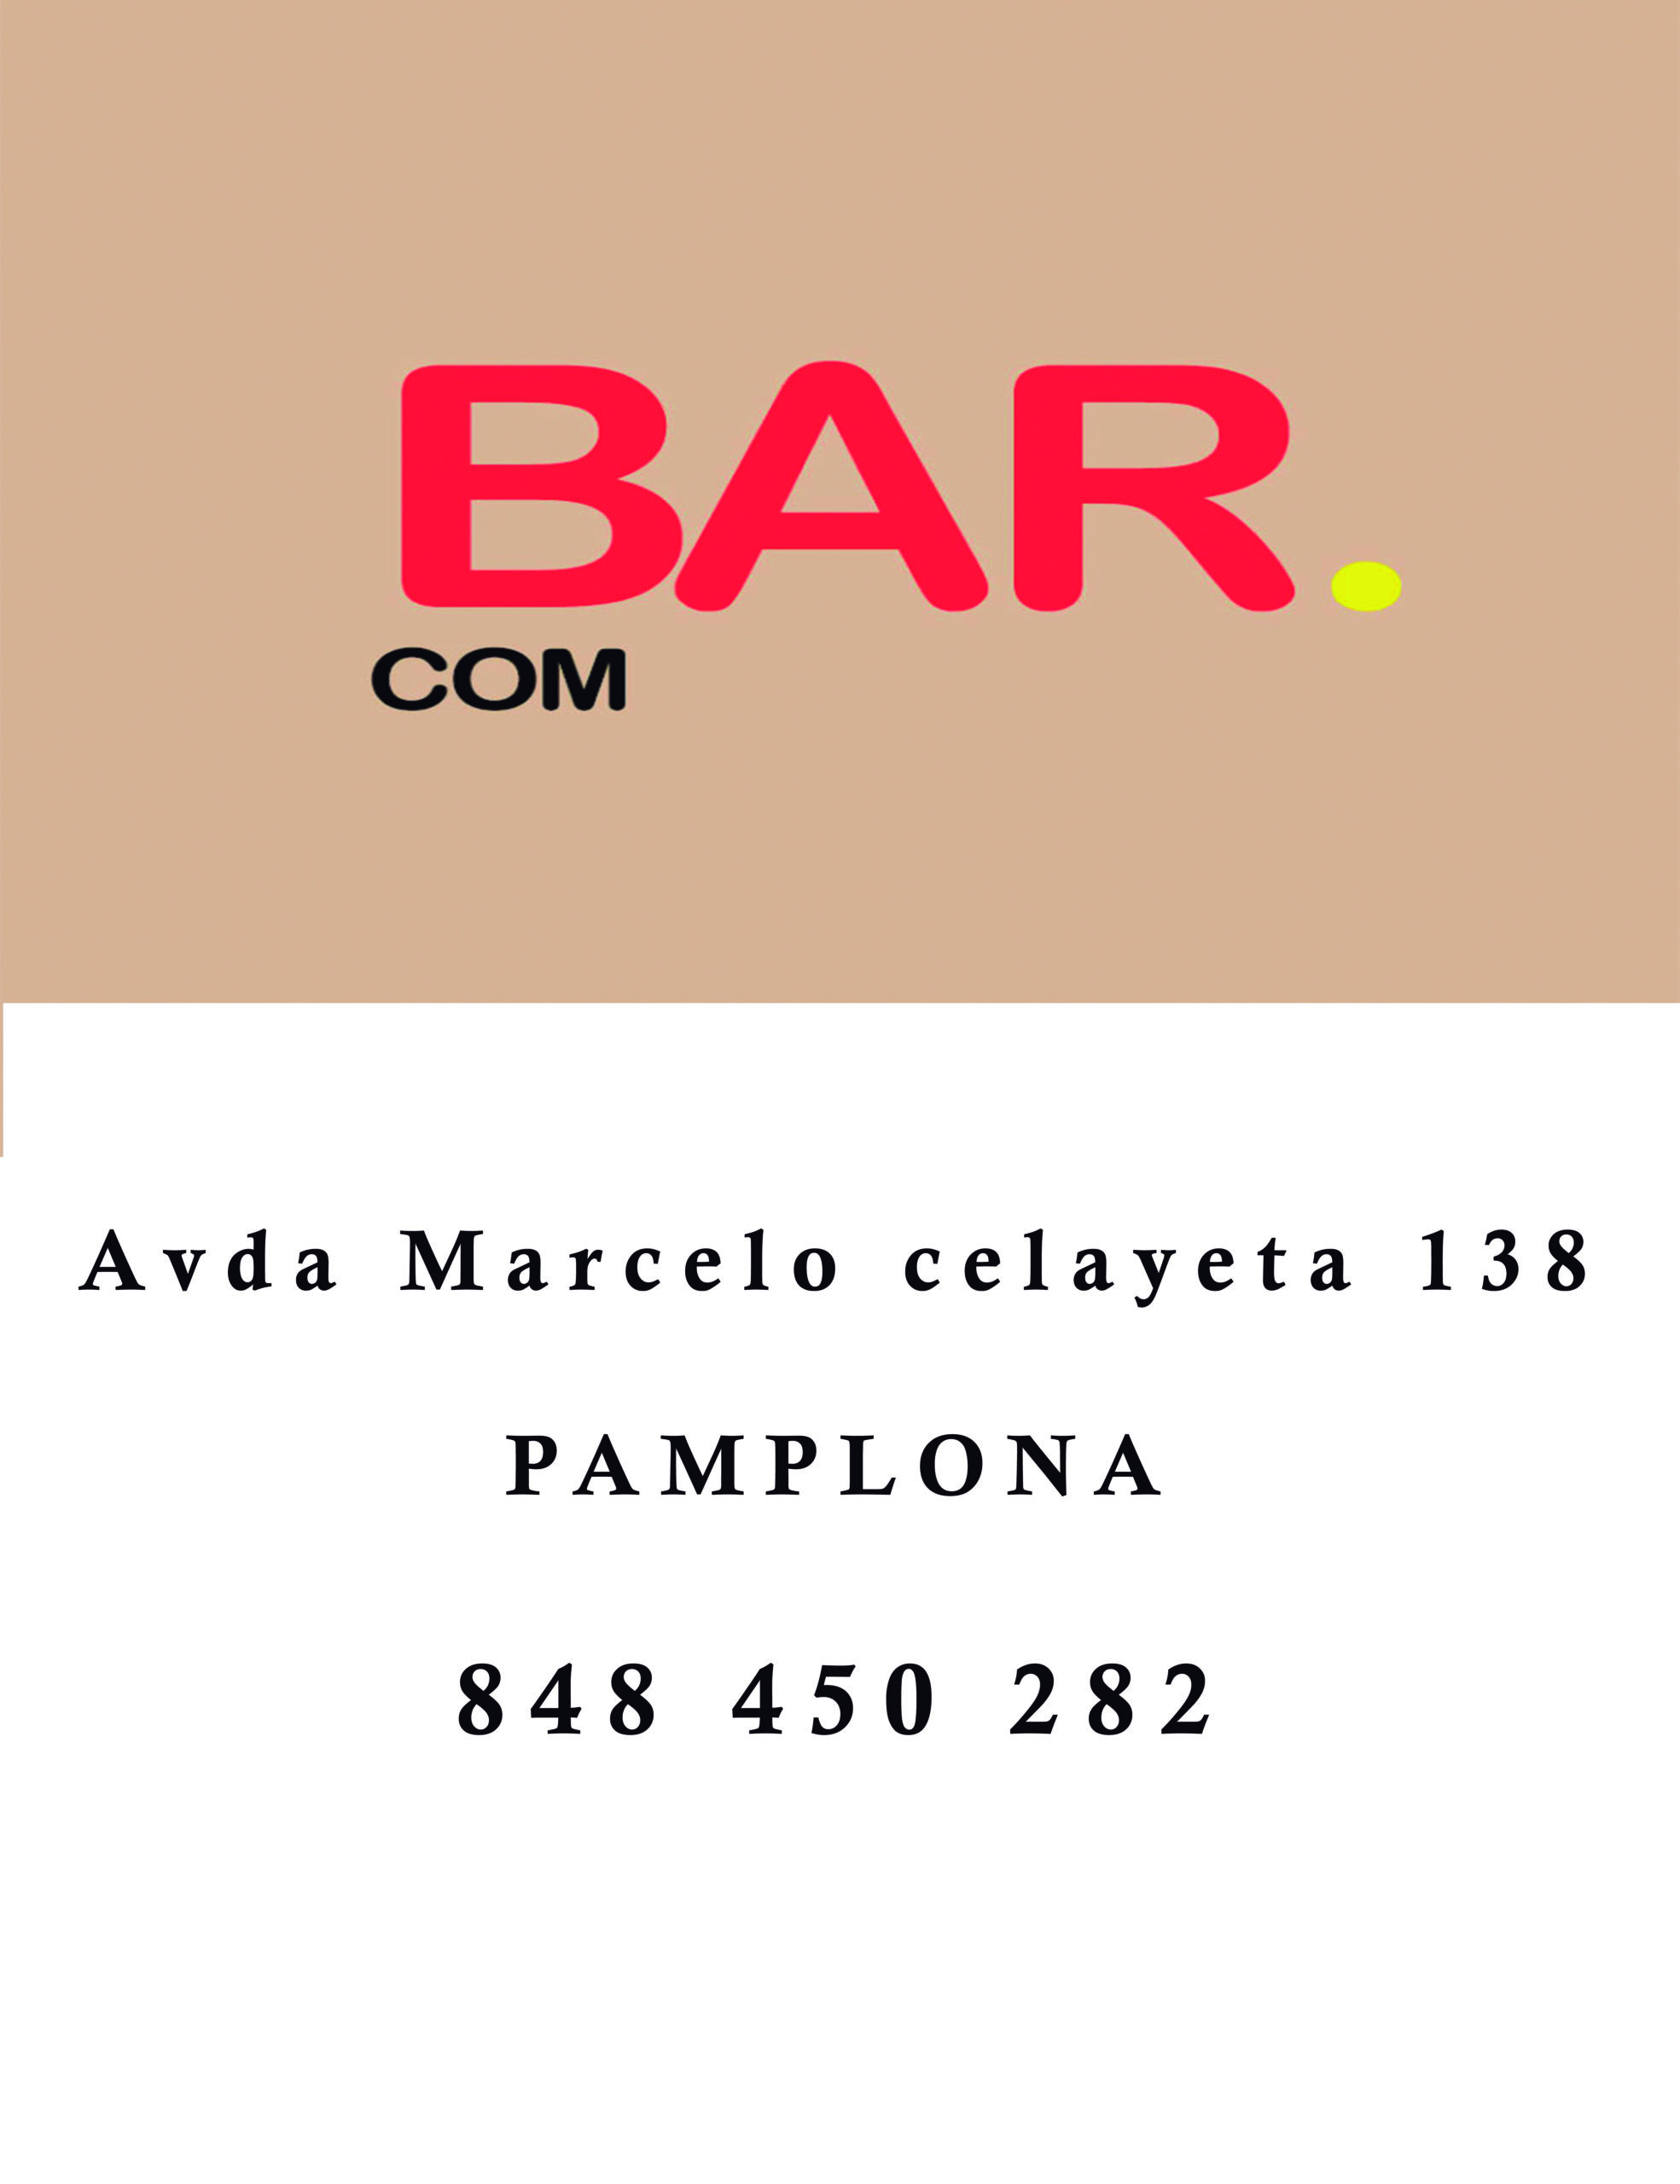 Bar.com